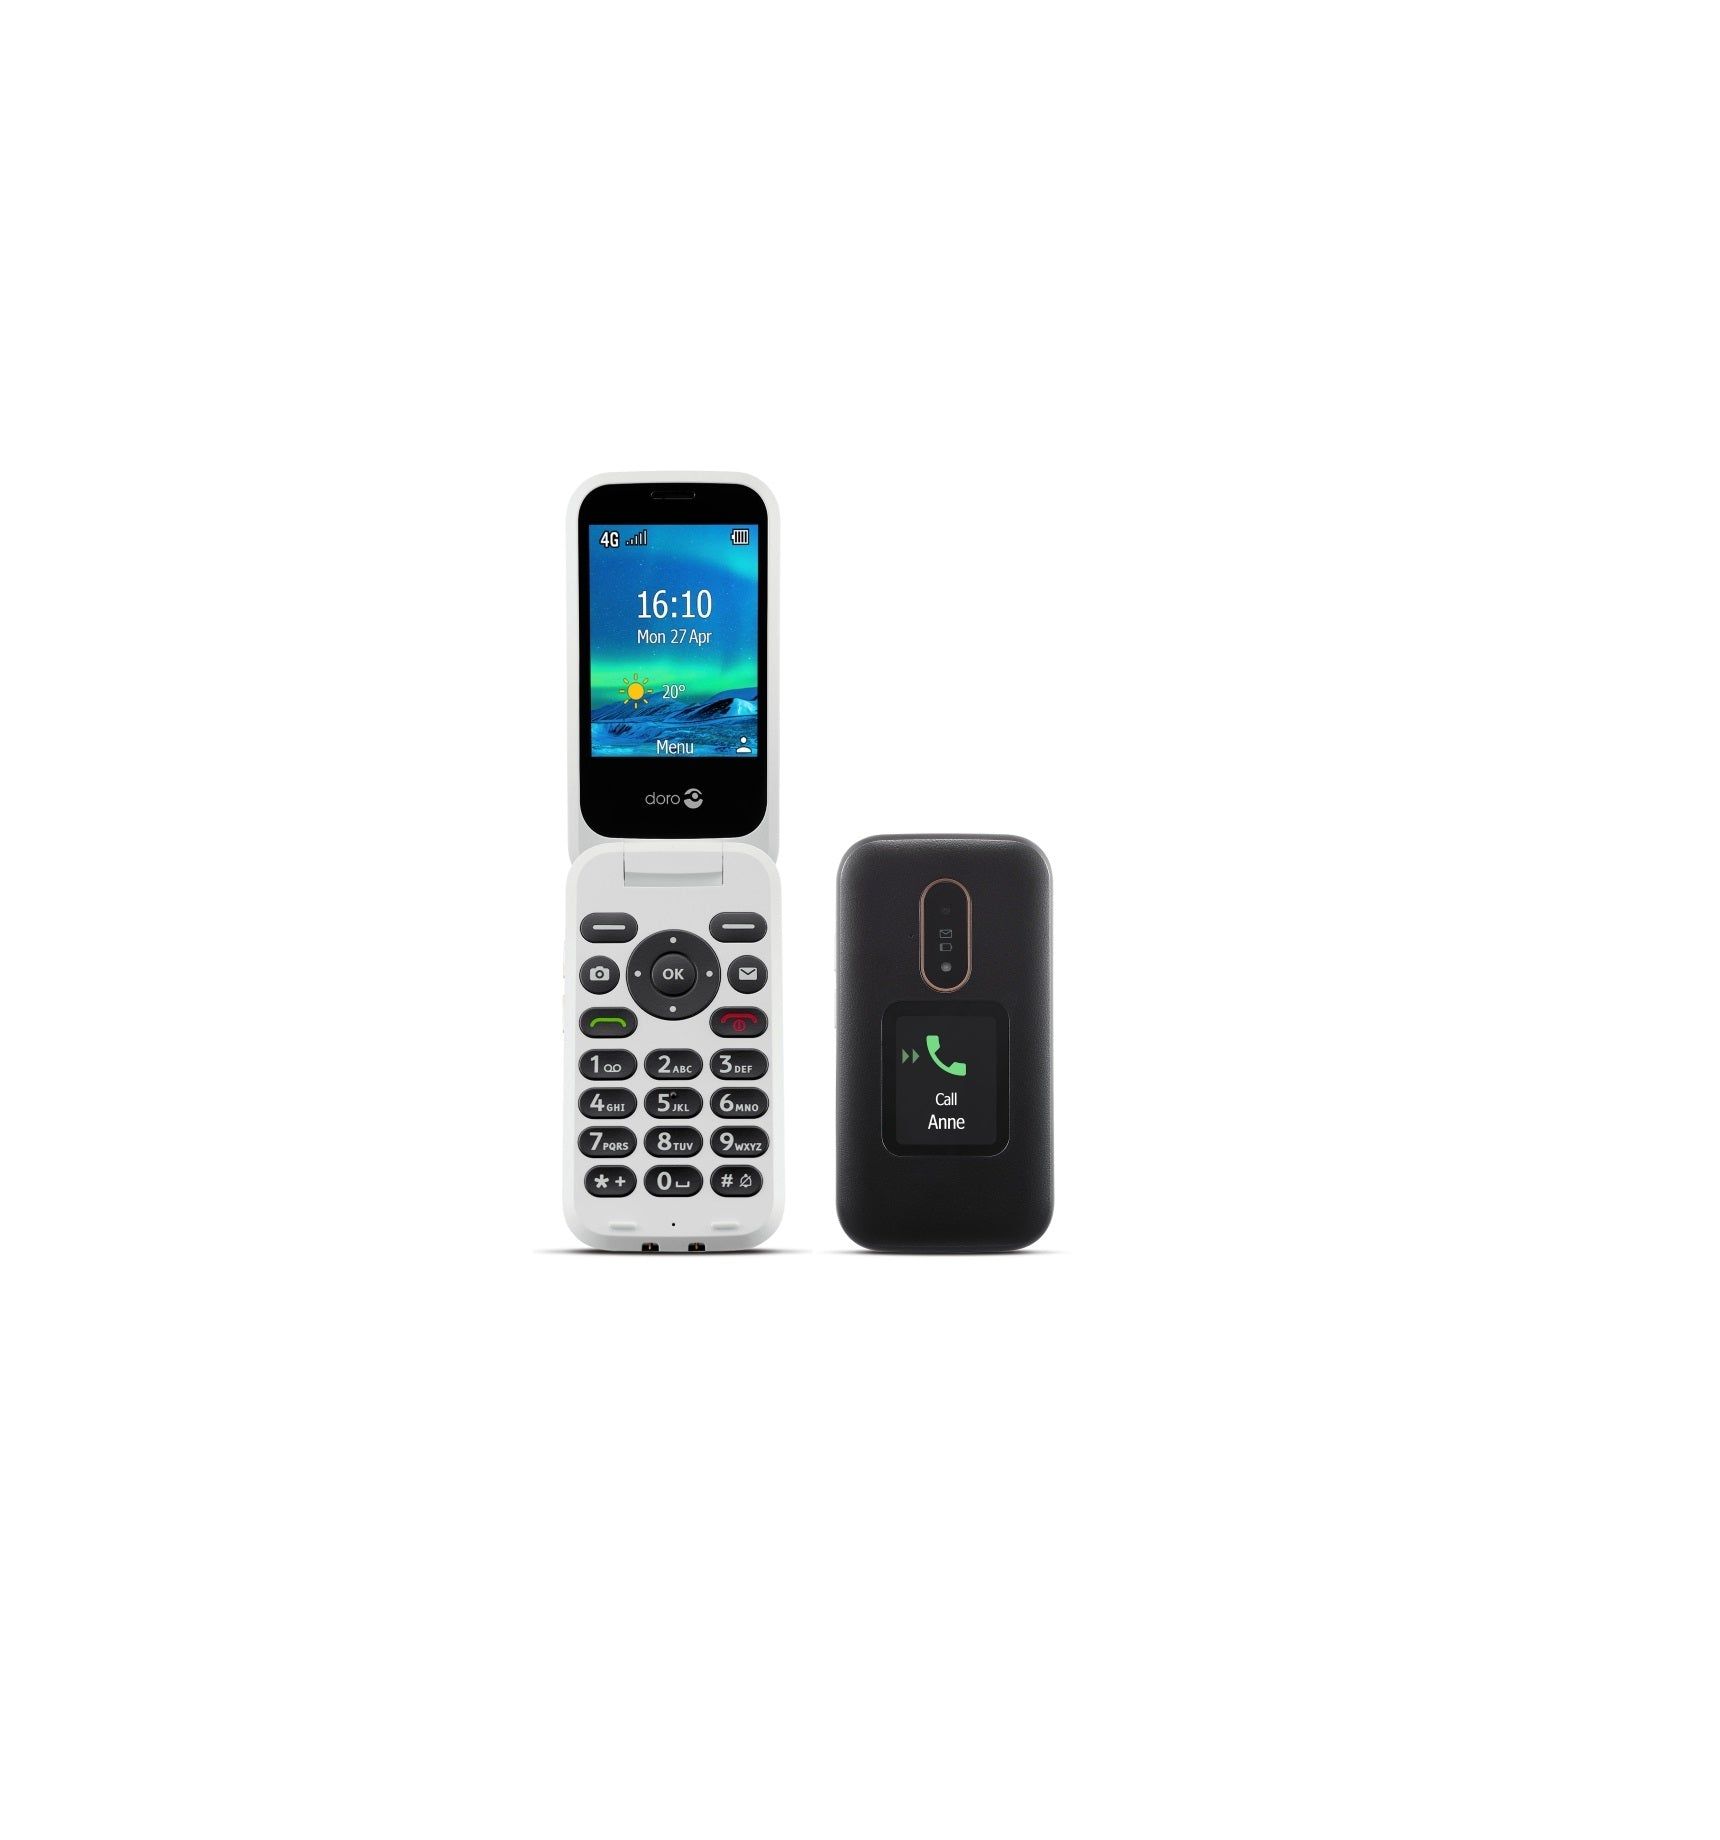 Doro Mobiele Klaptelefoon 6880 4G Senioren GSM Kopen van  Doro?- Vanaf €119.95 bij Pucshop.nl